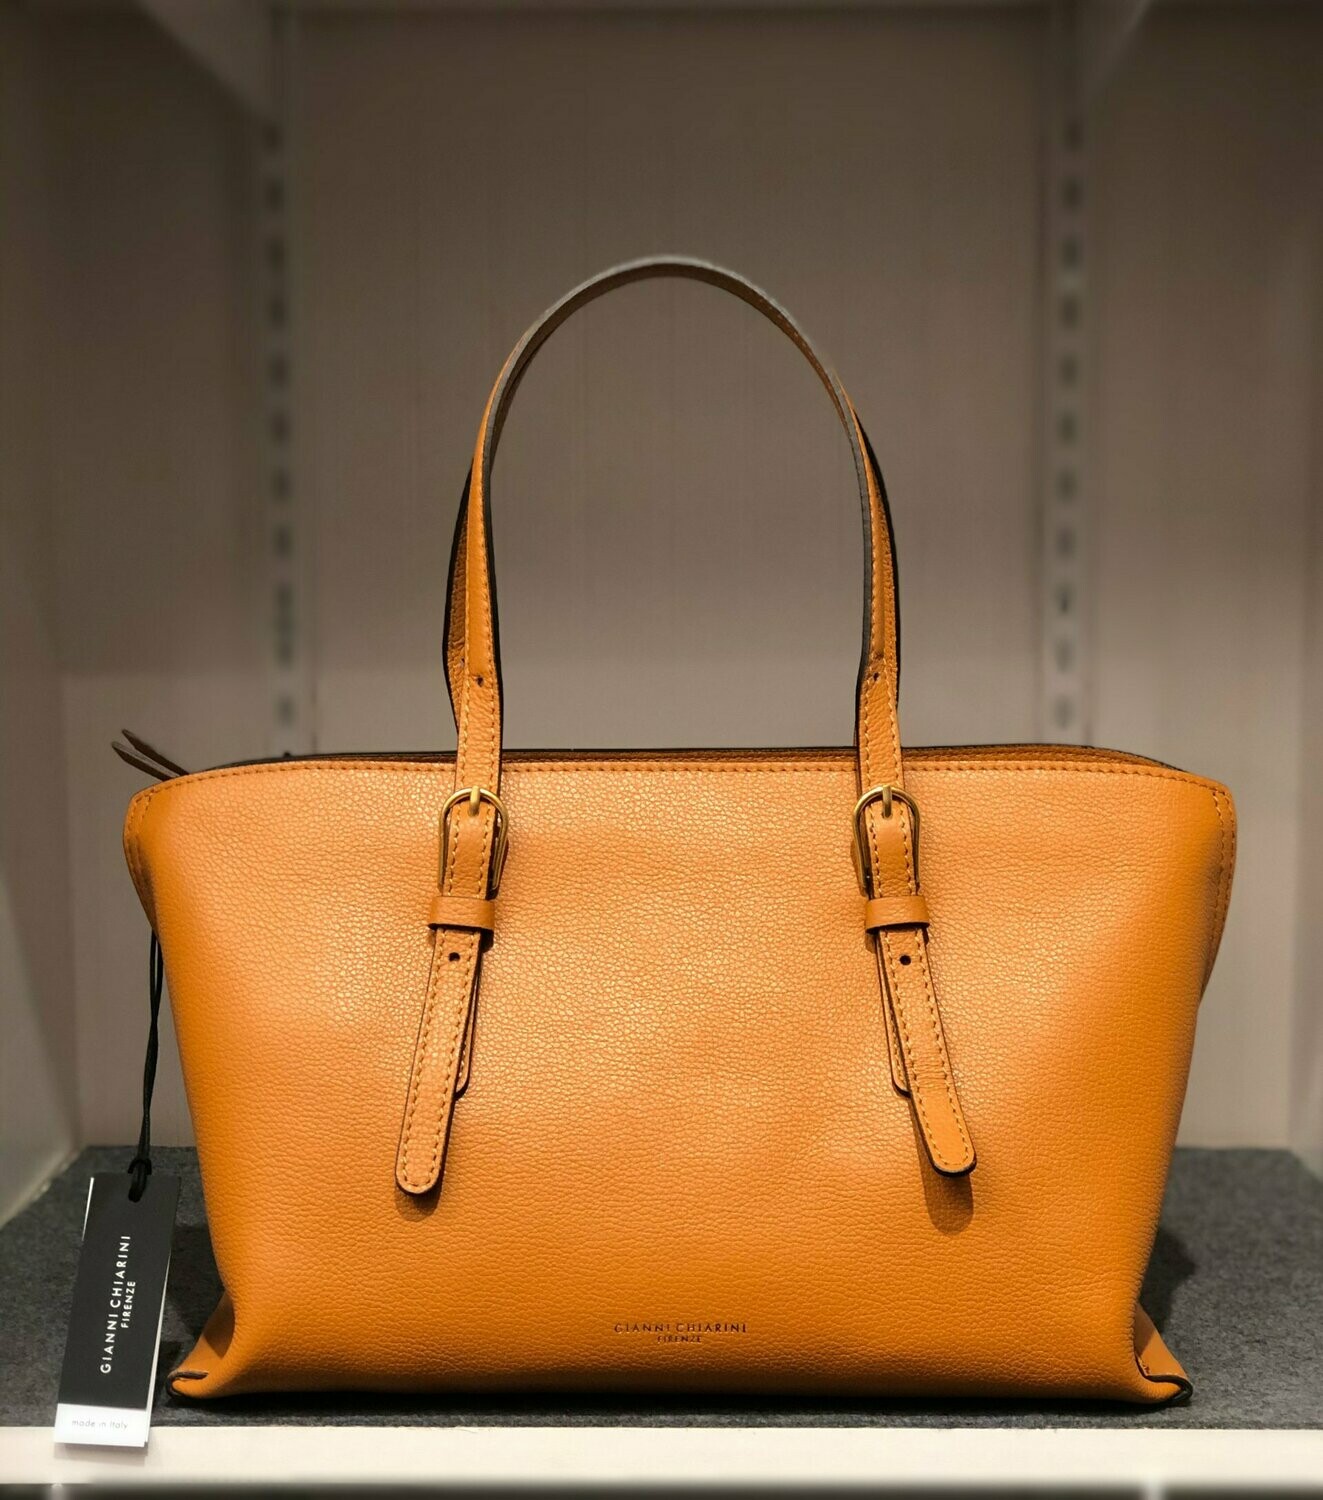 Gianni Chiarini Medium Handbag